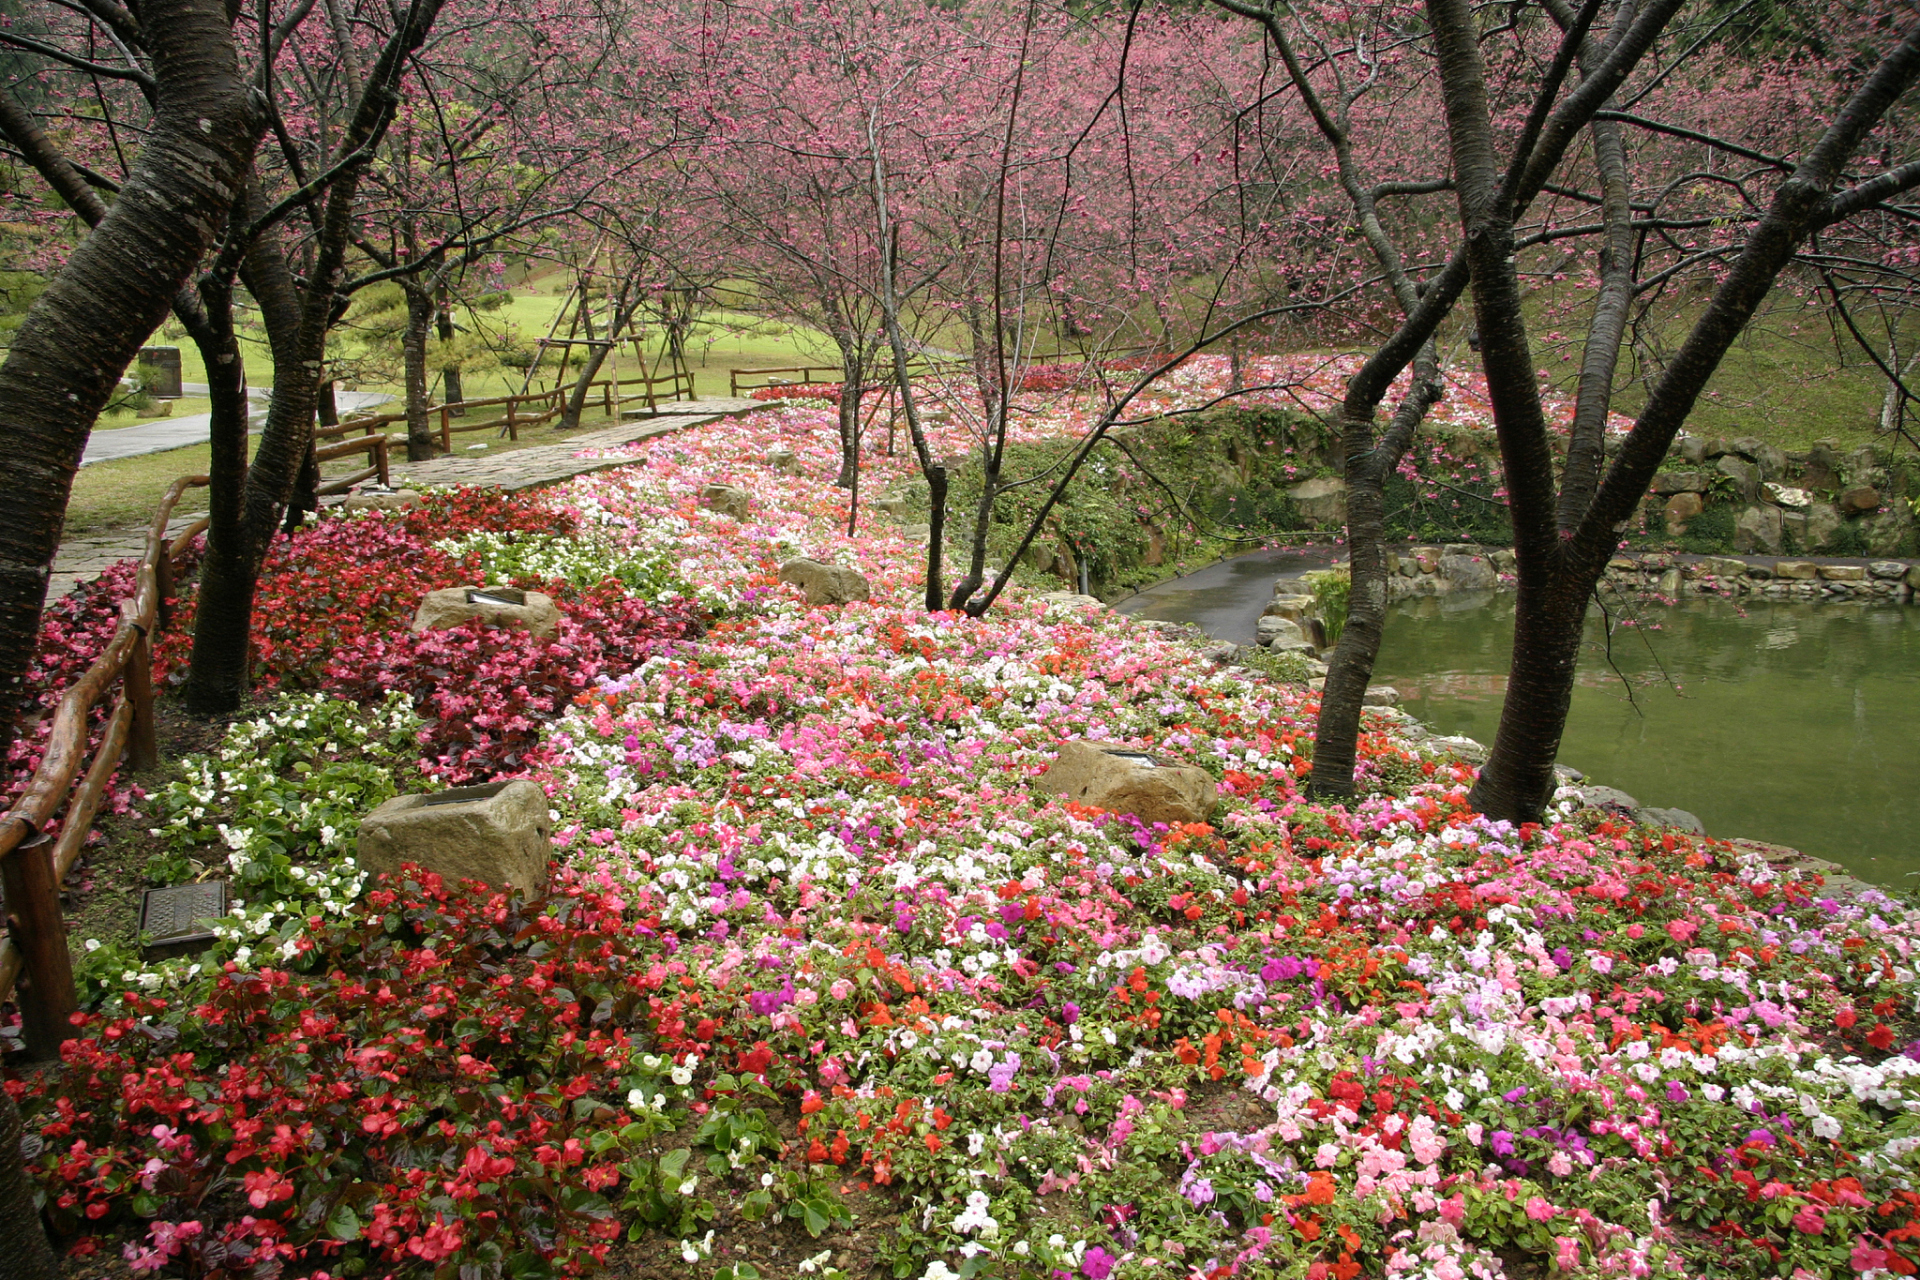 秦皇岛街头在春季变得色彩斑斓,一片花海欢腾